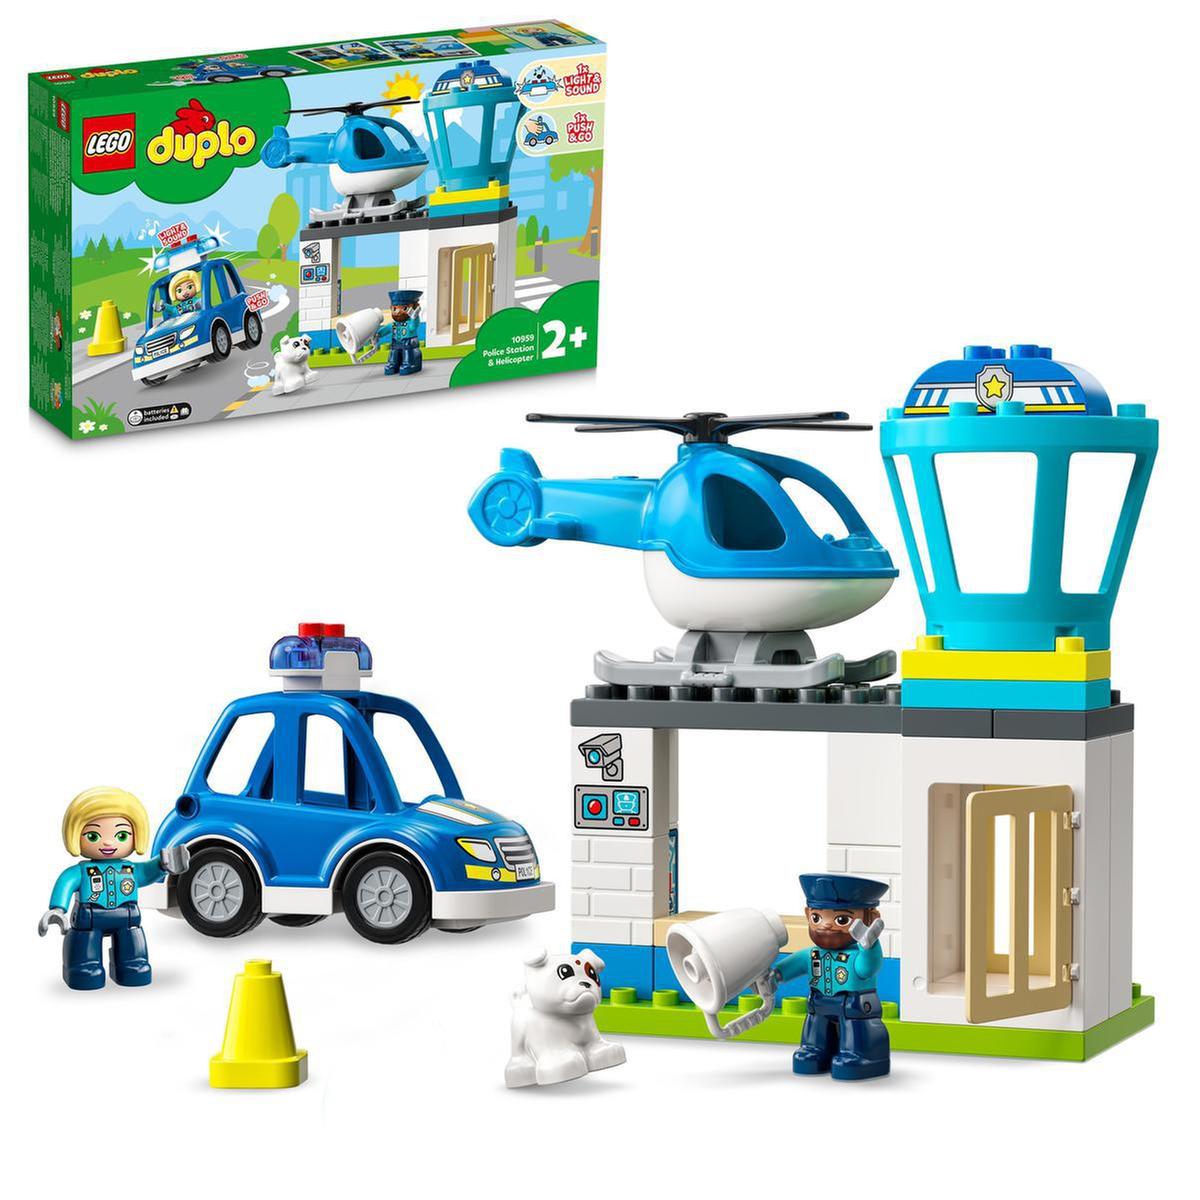 LEGO DUPLO - Esquadra da polícia e helicóptero - 10959 | Duplo vila | Loja  de brinquedos e videojogos Online Toysrus